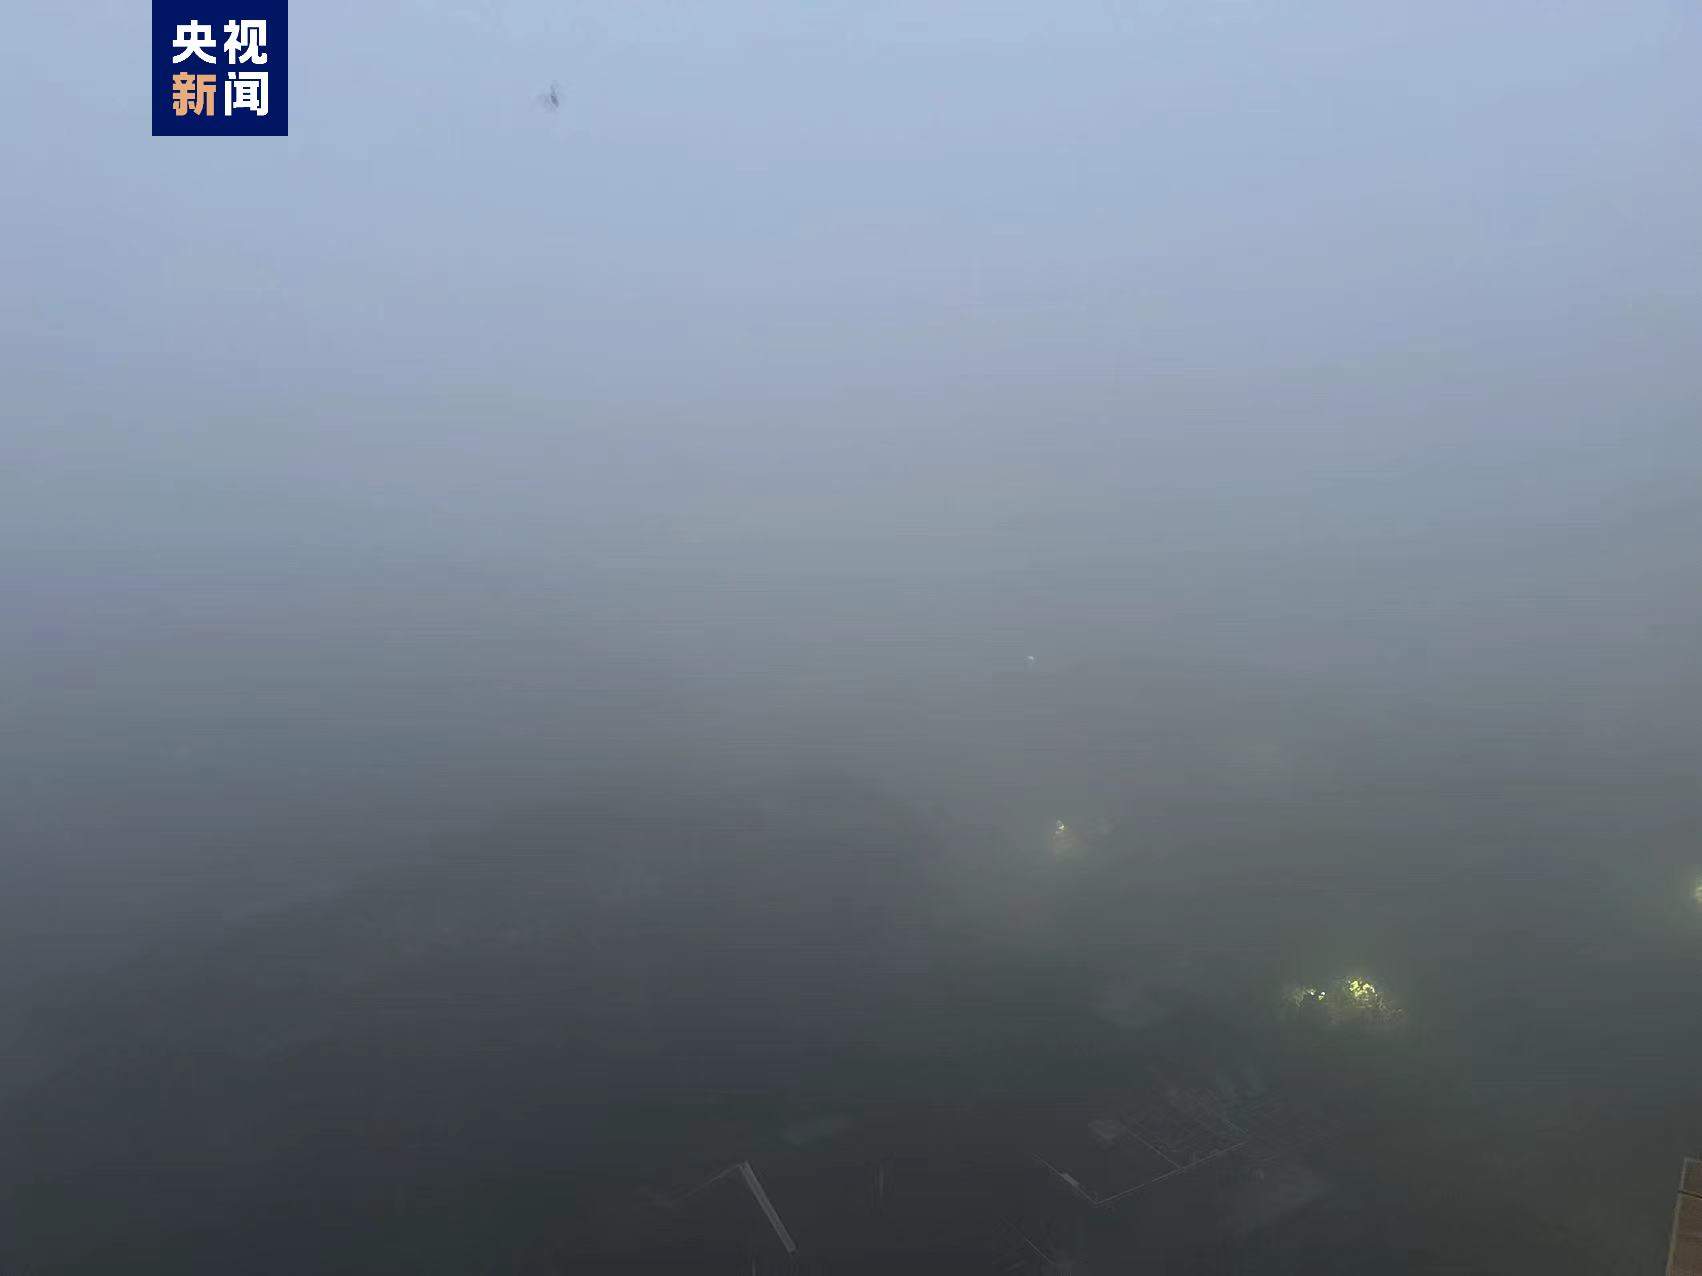 江西南昌出现强浓雾 多个乡镇能见度不足50米